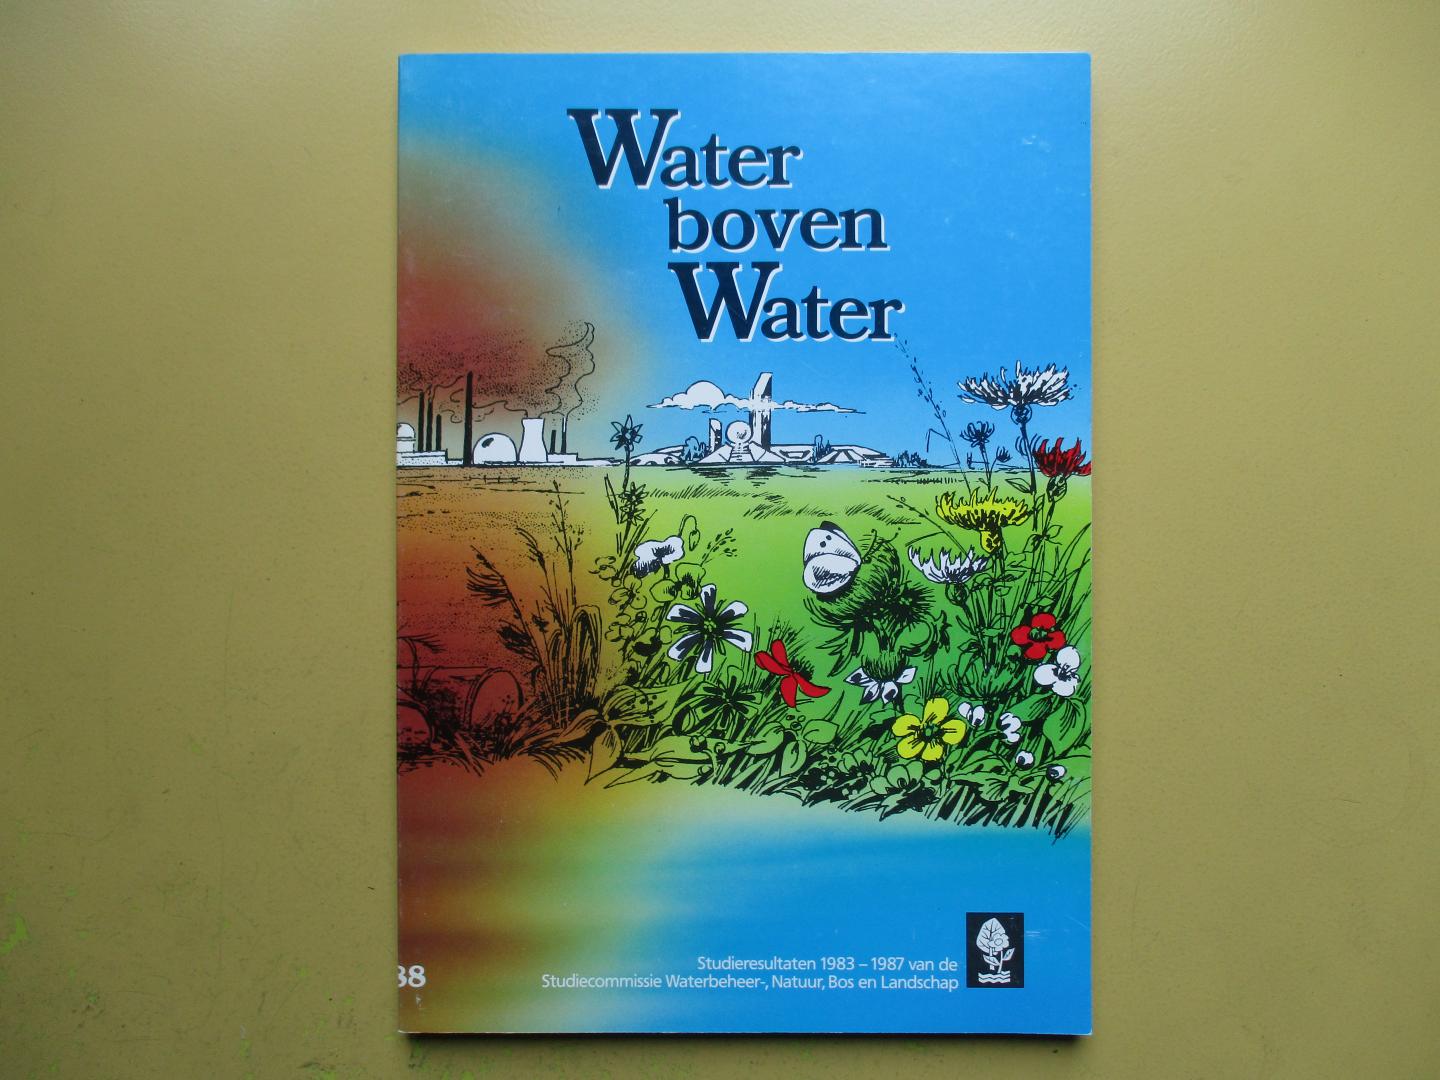 Beusekom, dr. C. F. van - Water boven water - Studieresultaten 1983-1987 van de Studiecommissie Waterbeheer-, Natuur, Bos en Landschap